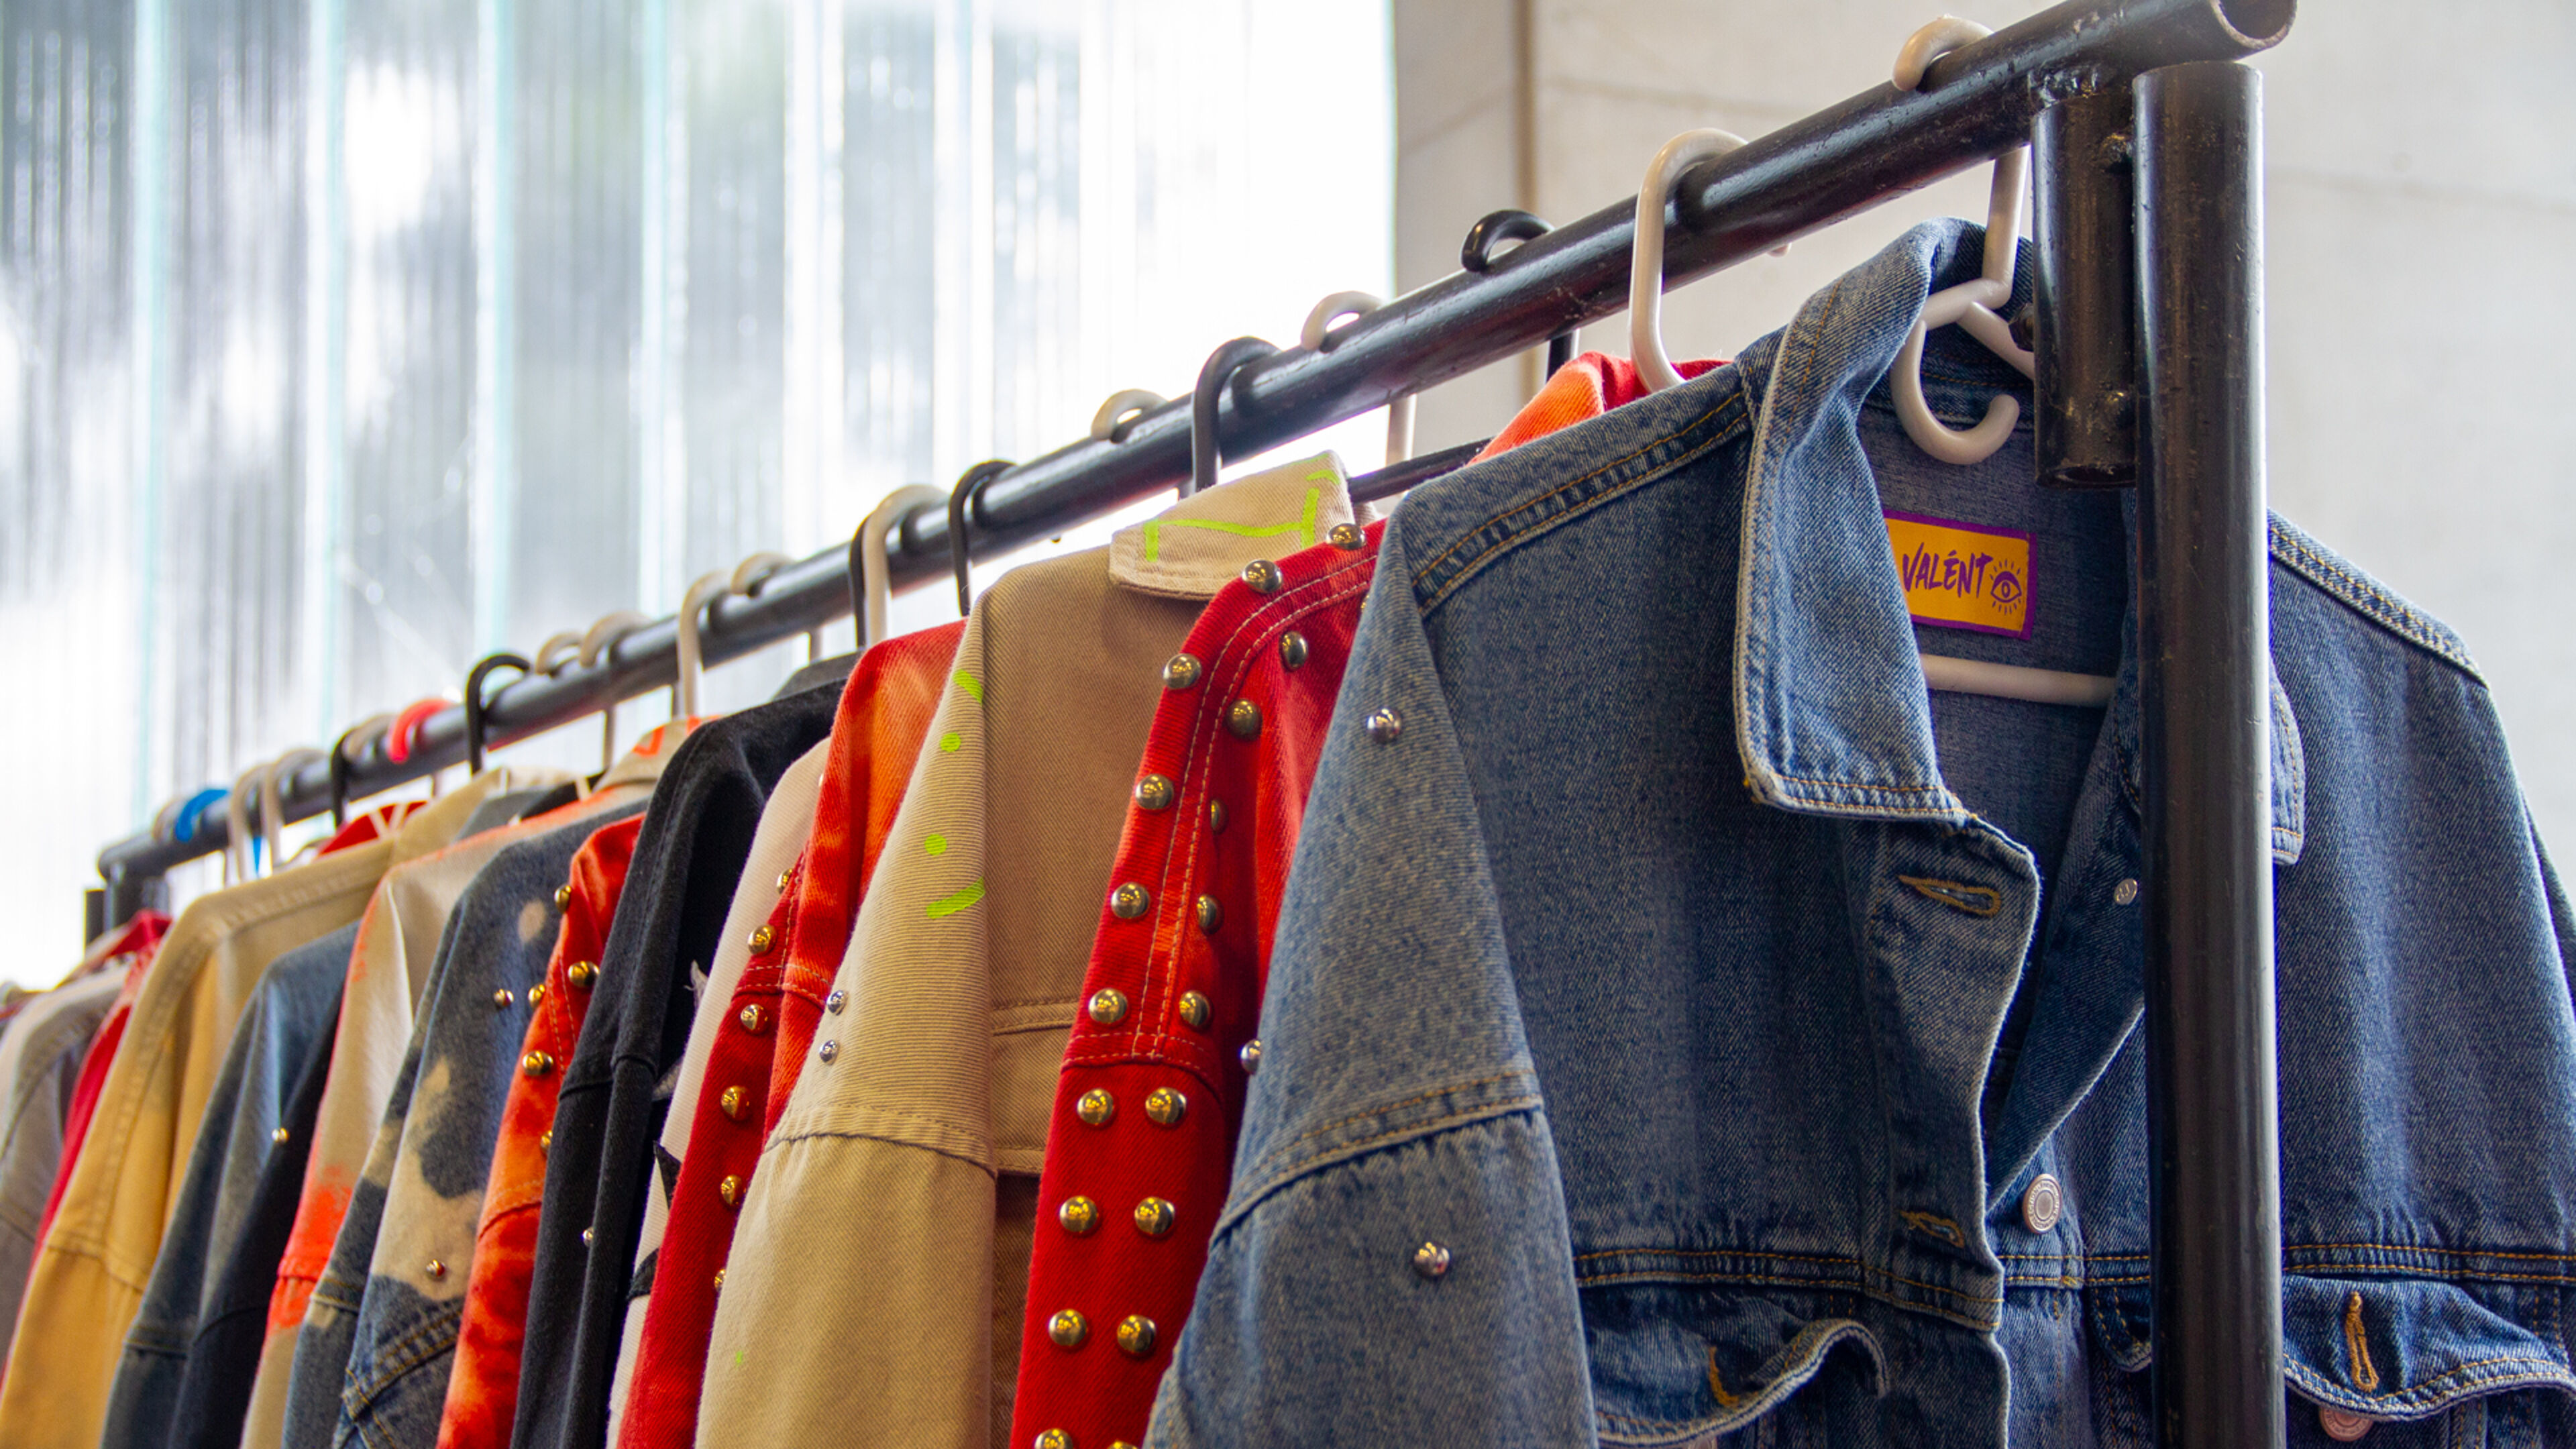 Una variedad colorida de chaquetas y camisas en un perchero, destacando una variedad de texturas y estilos.